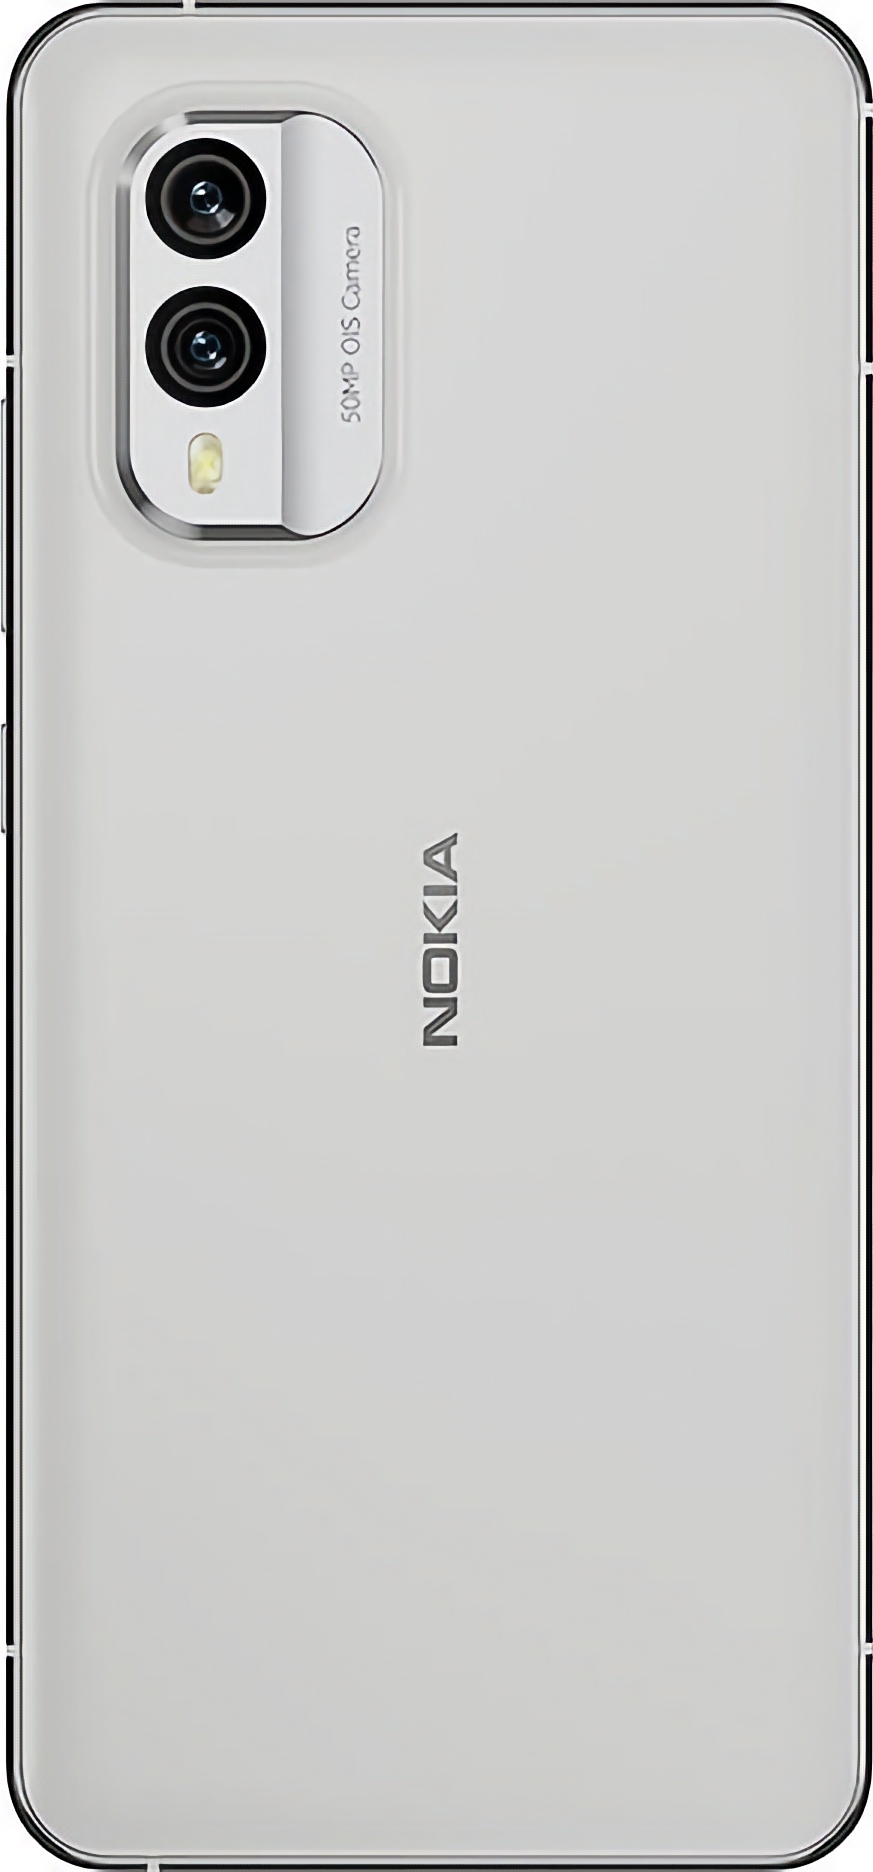 Los mejores móviles Nokia de 2021 - Tech Advisor